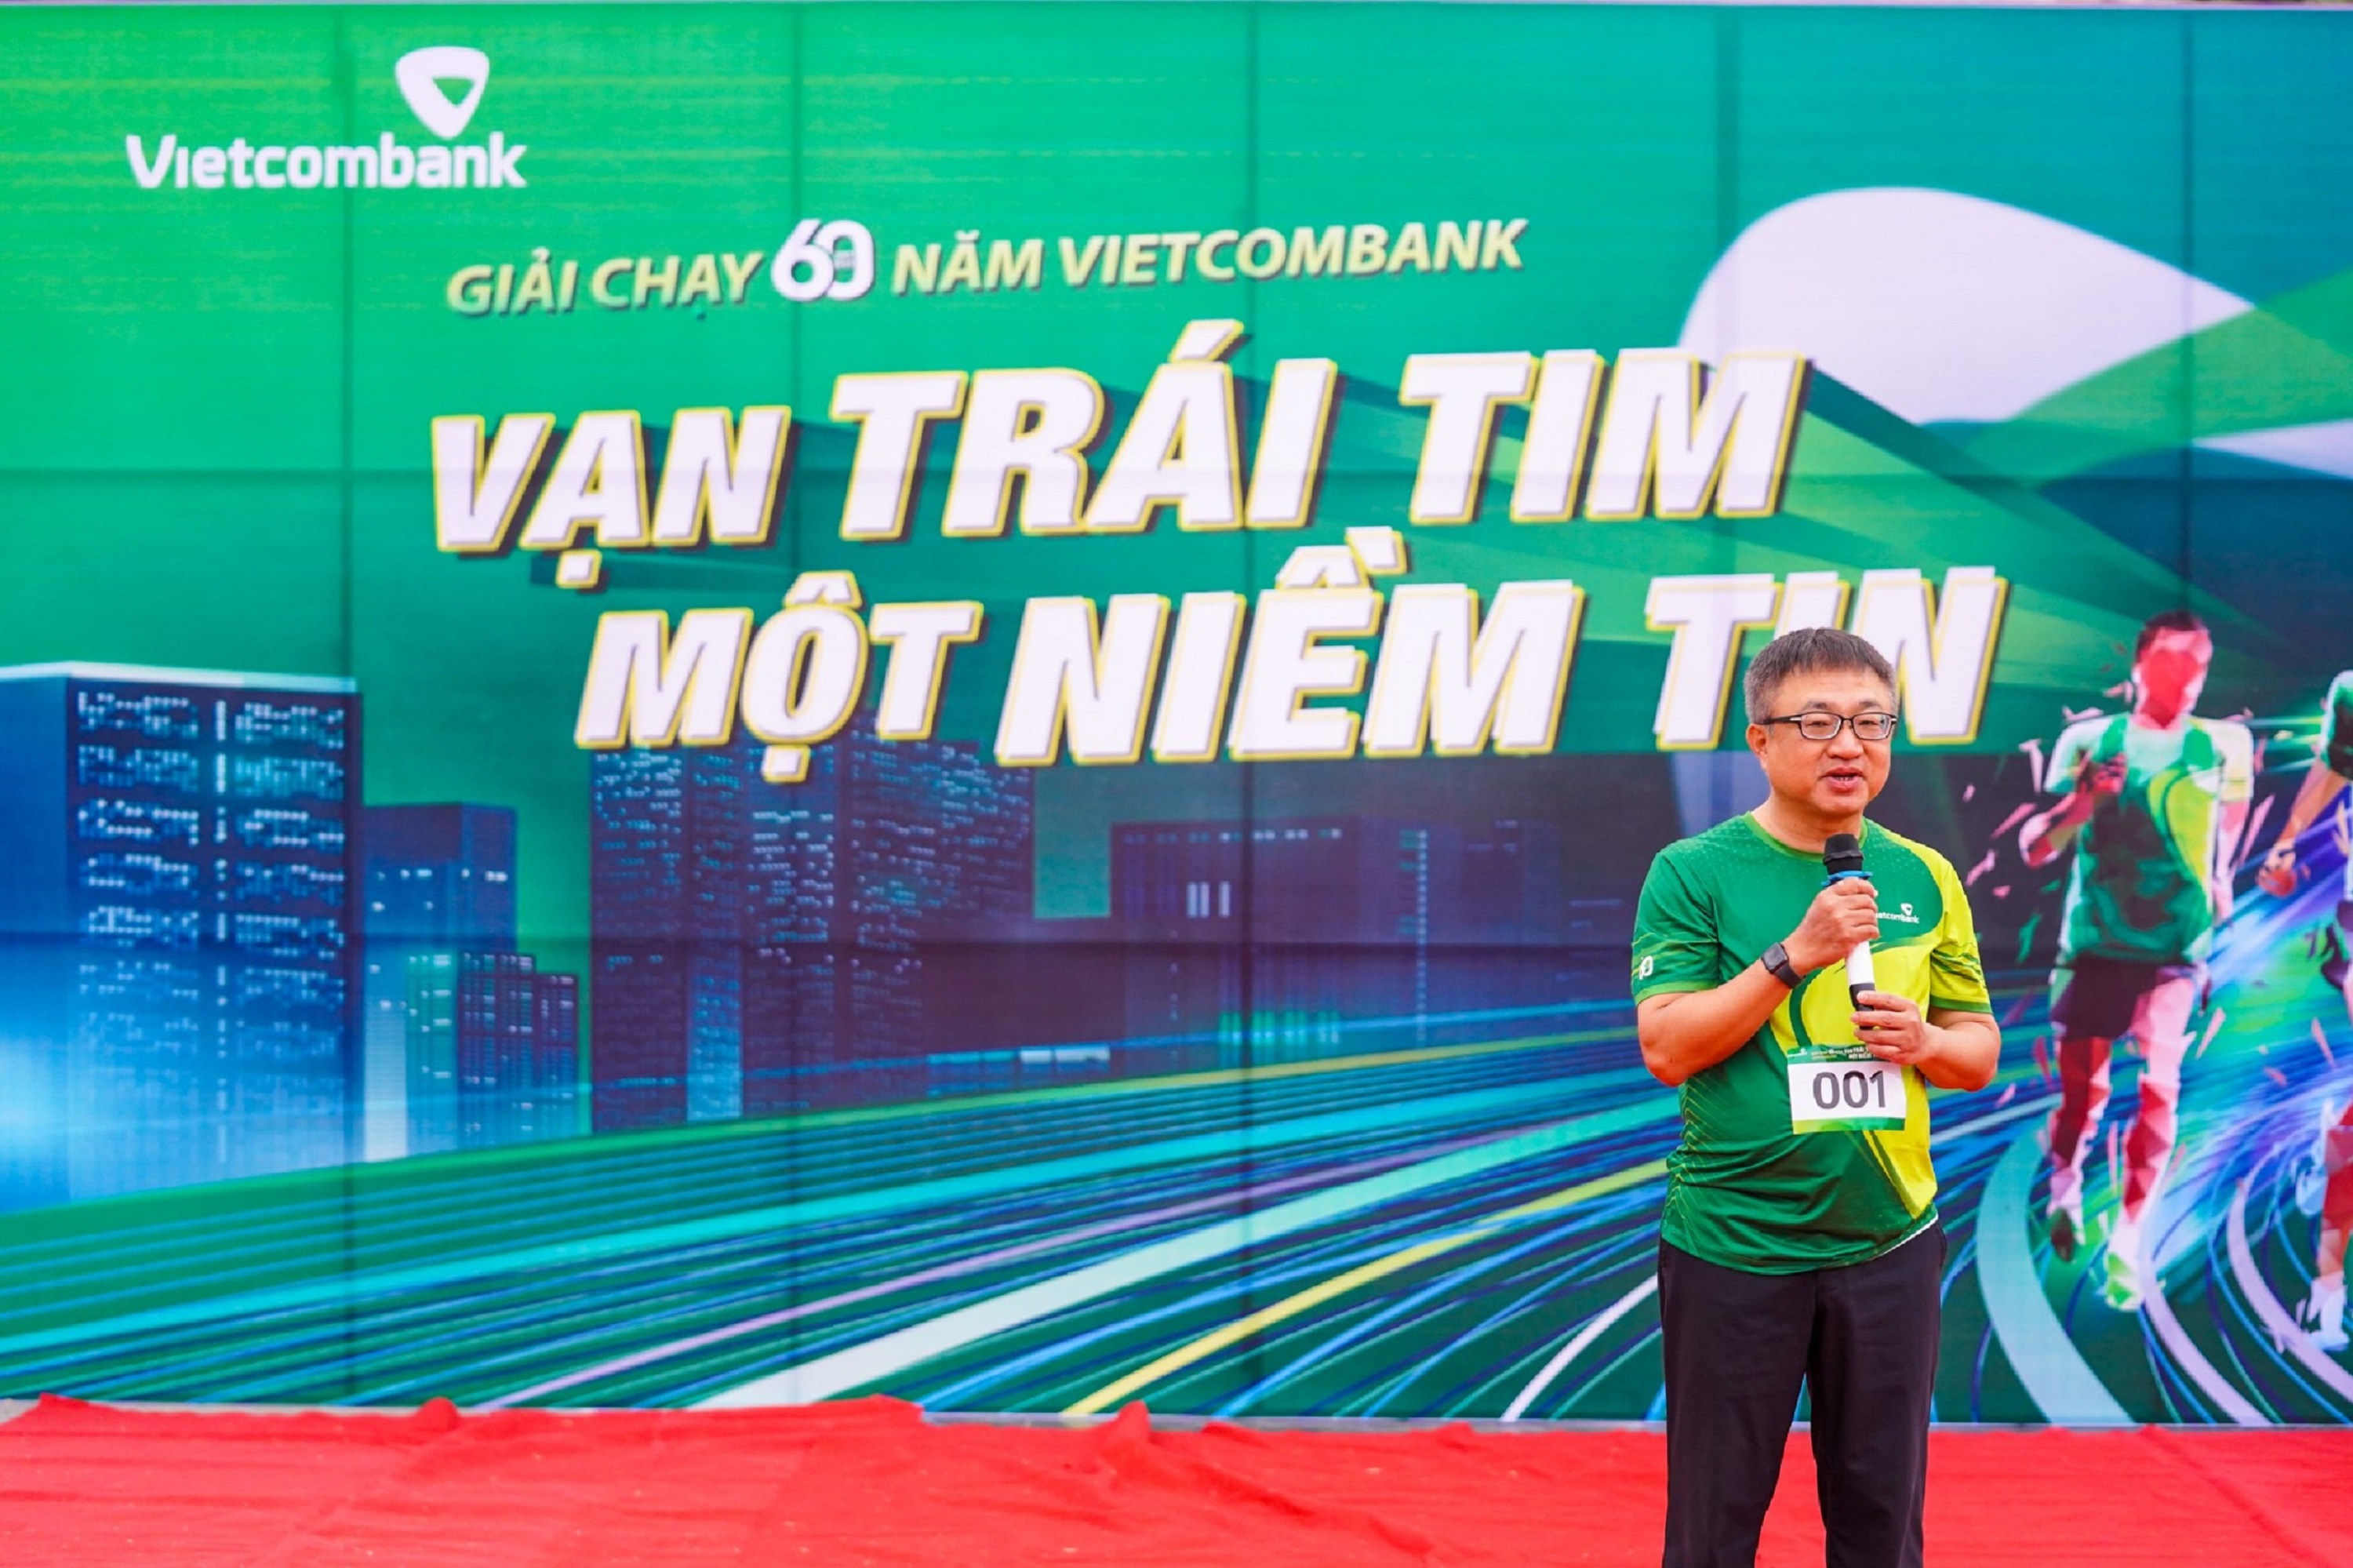 Vietcombank Bắc Giang tổ chức giải chạy “Vạn trái tim - Một niêm tin”